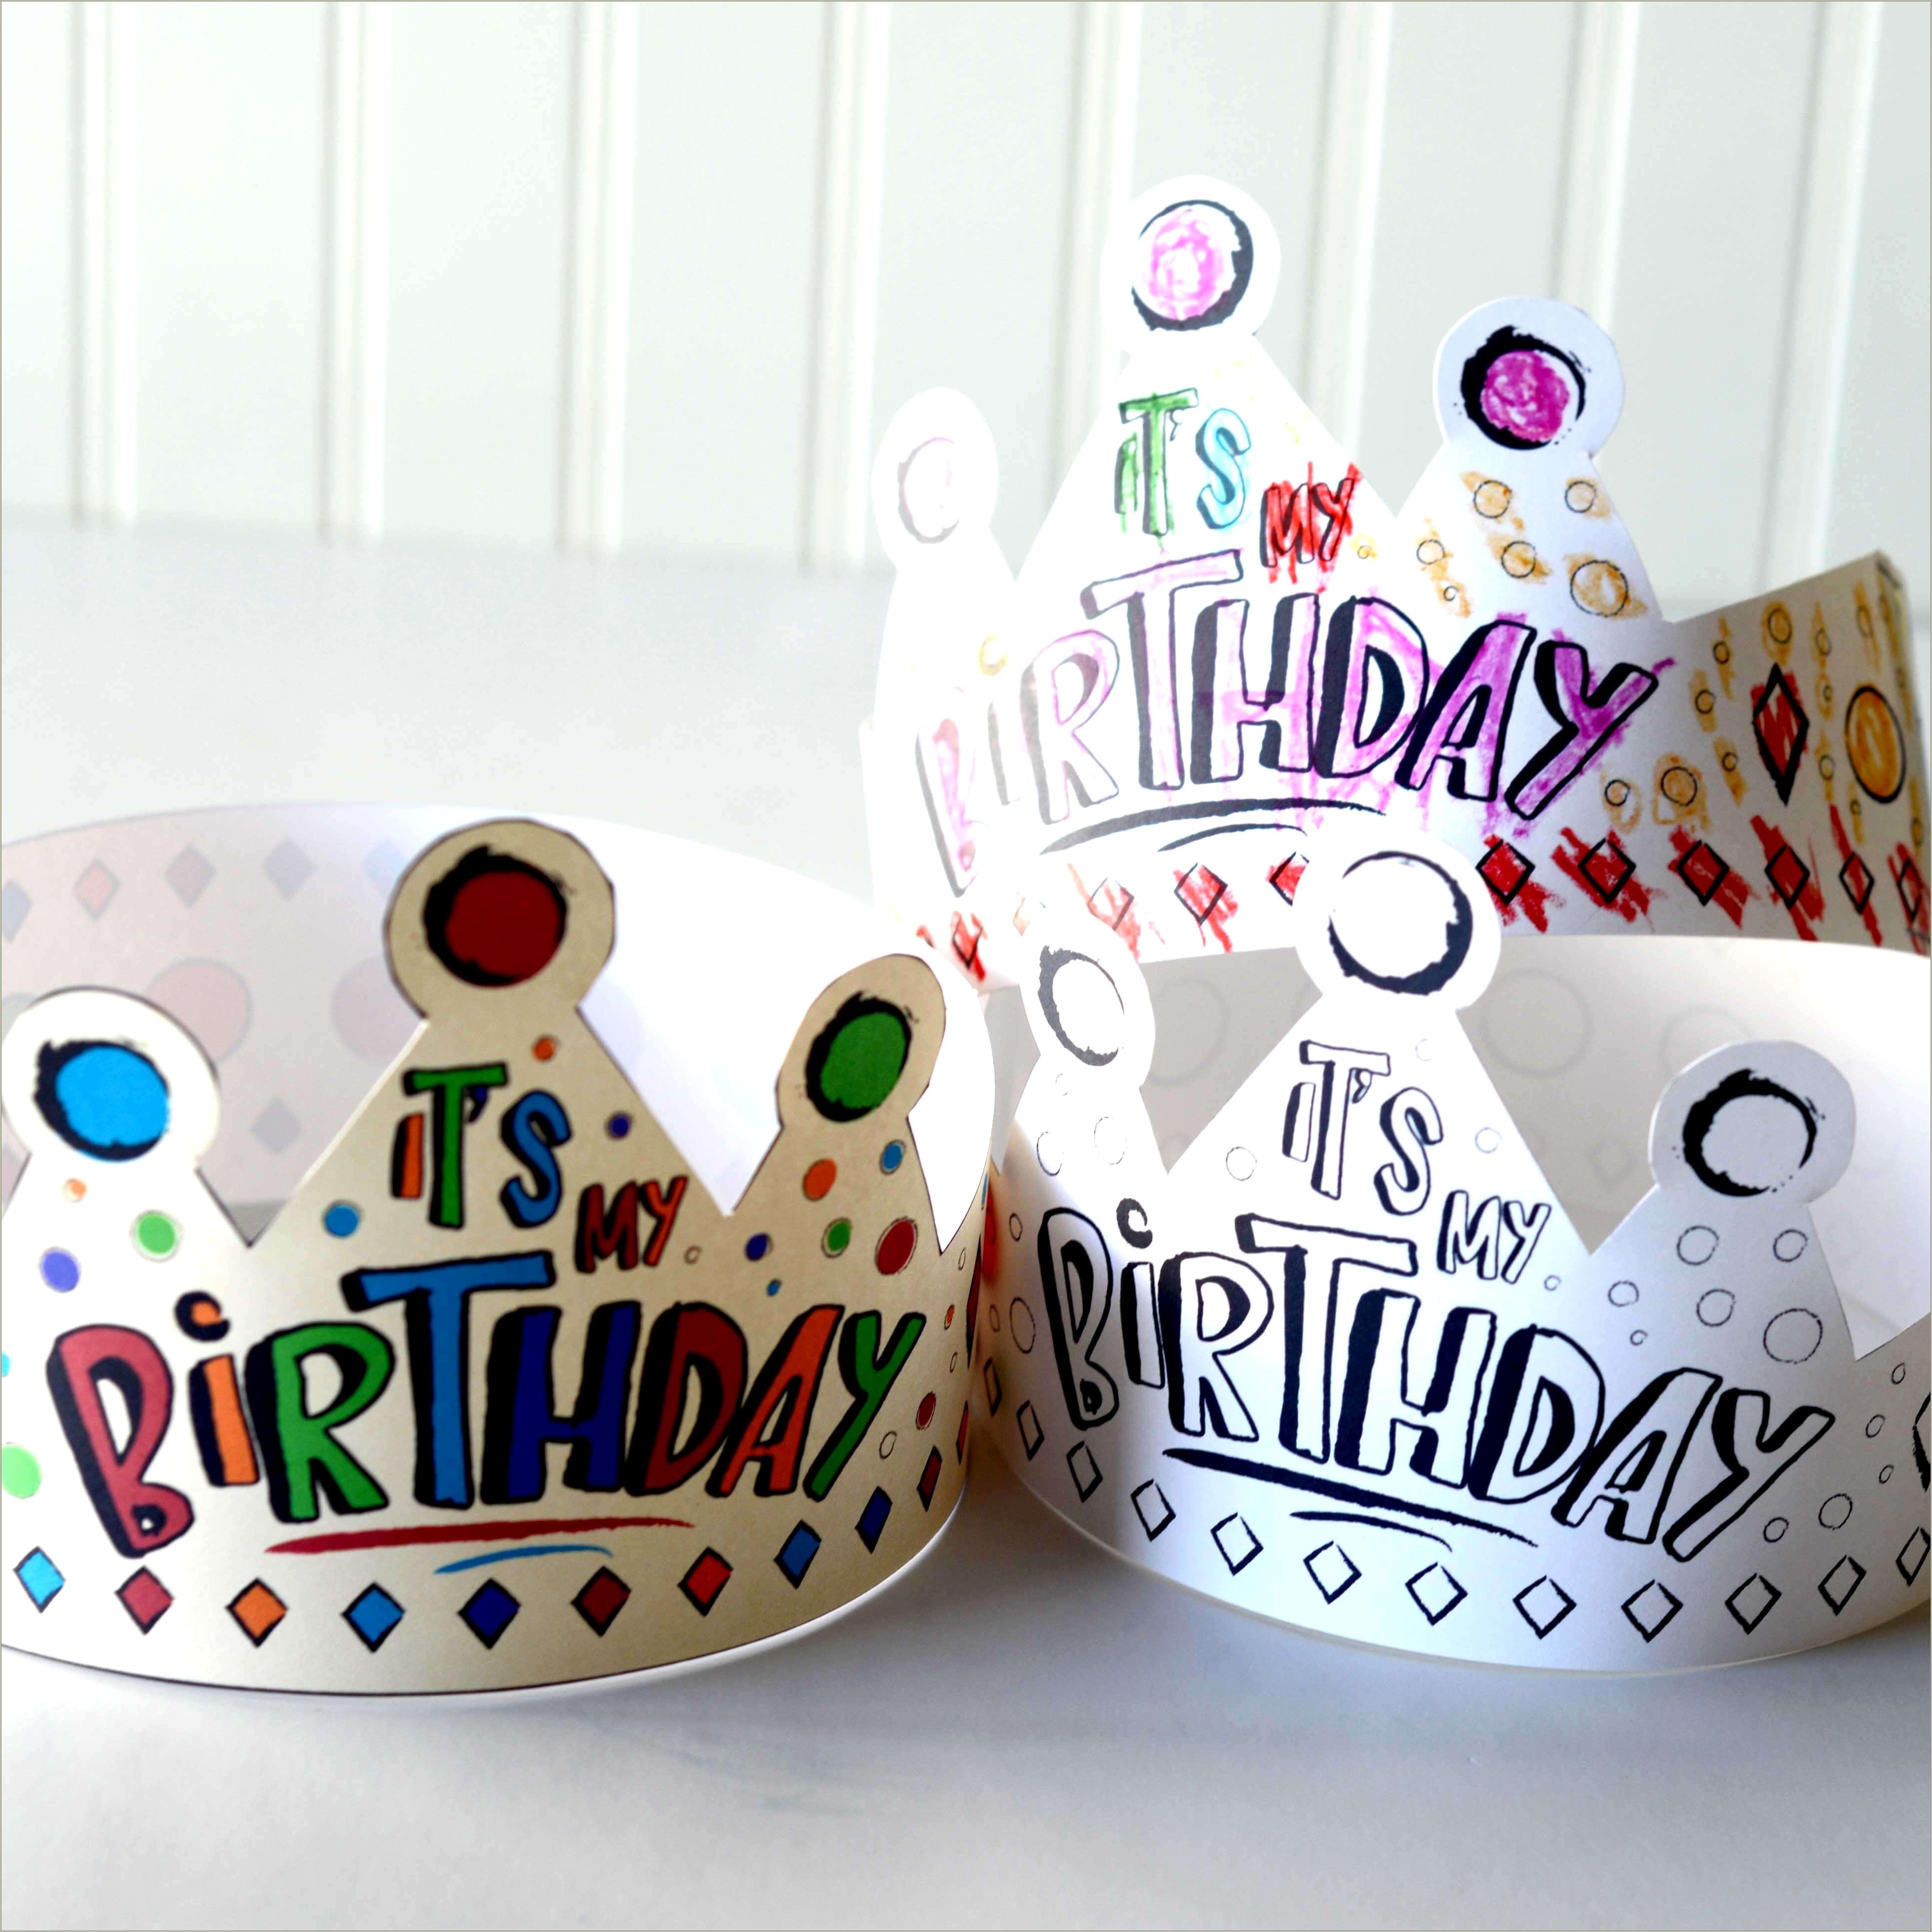 Free Children's Birthday Crown Template